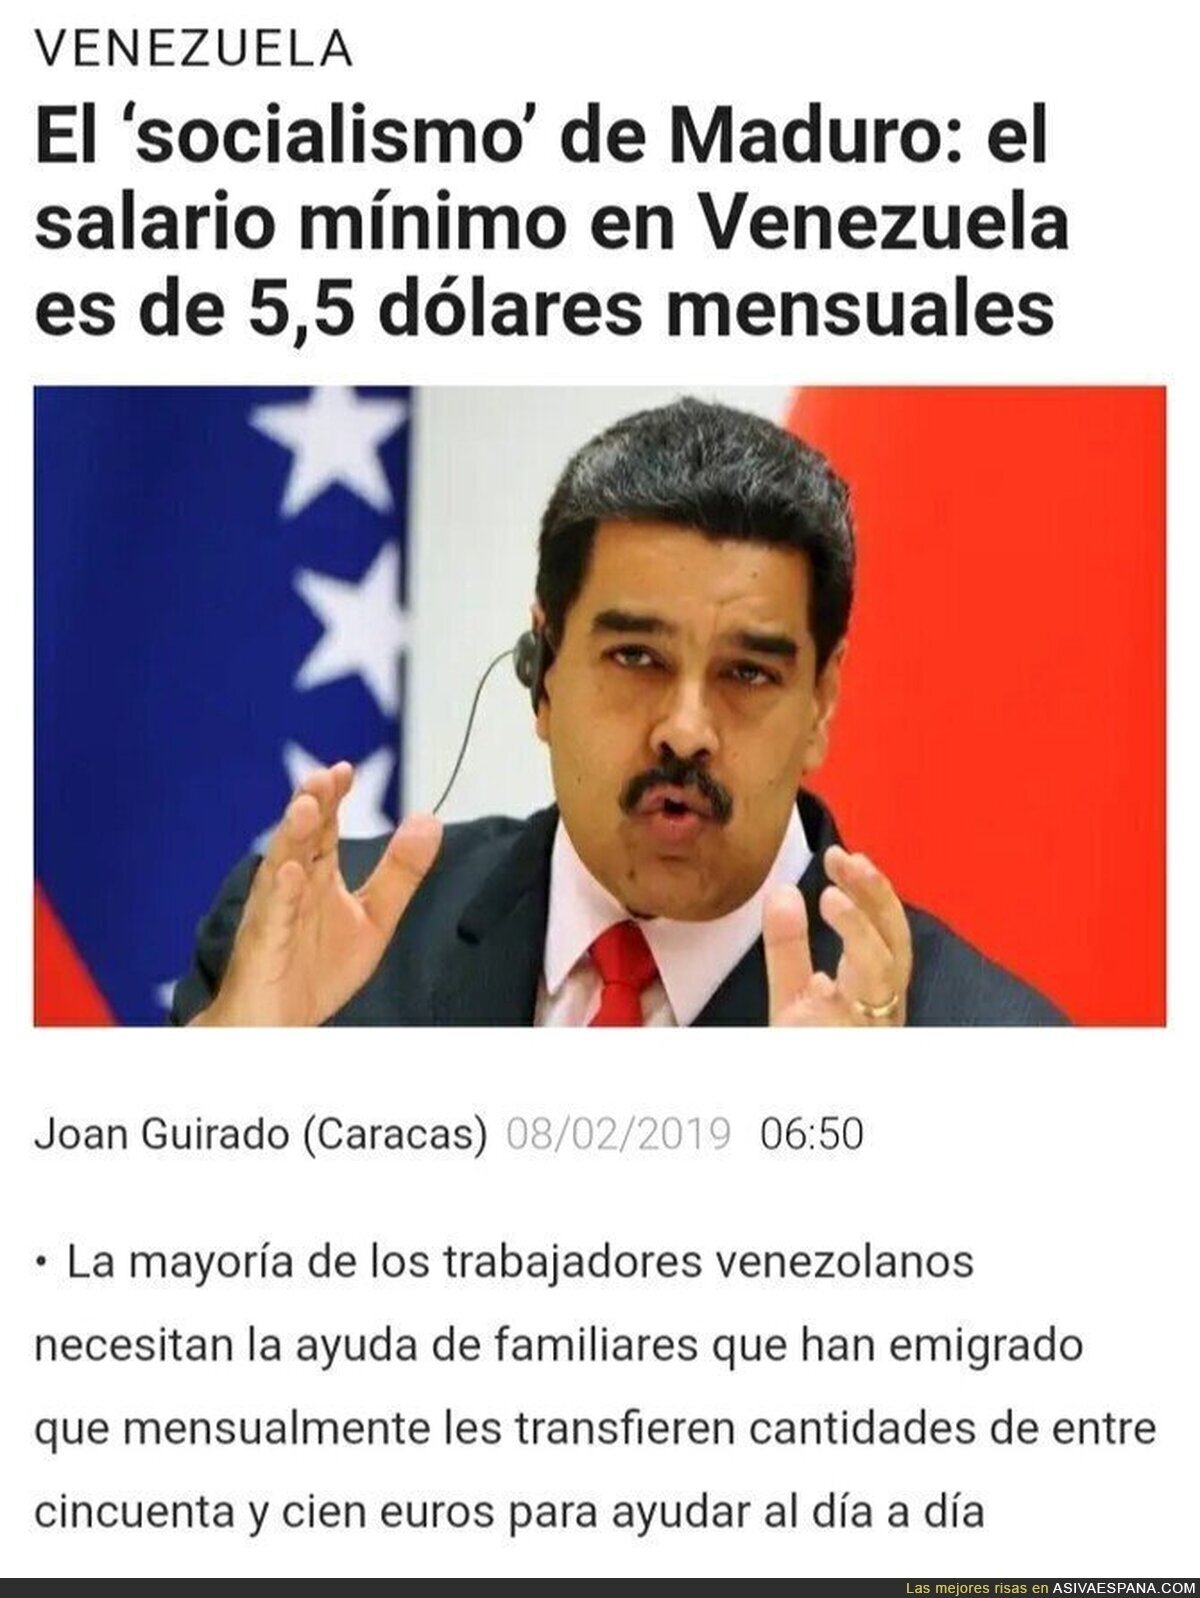 El paraíso socialista de Venezuela tiene un SMI de 5 dólares